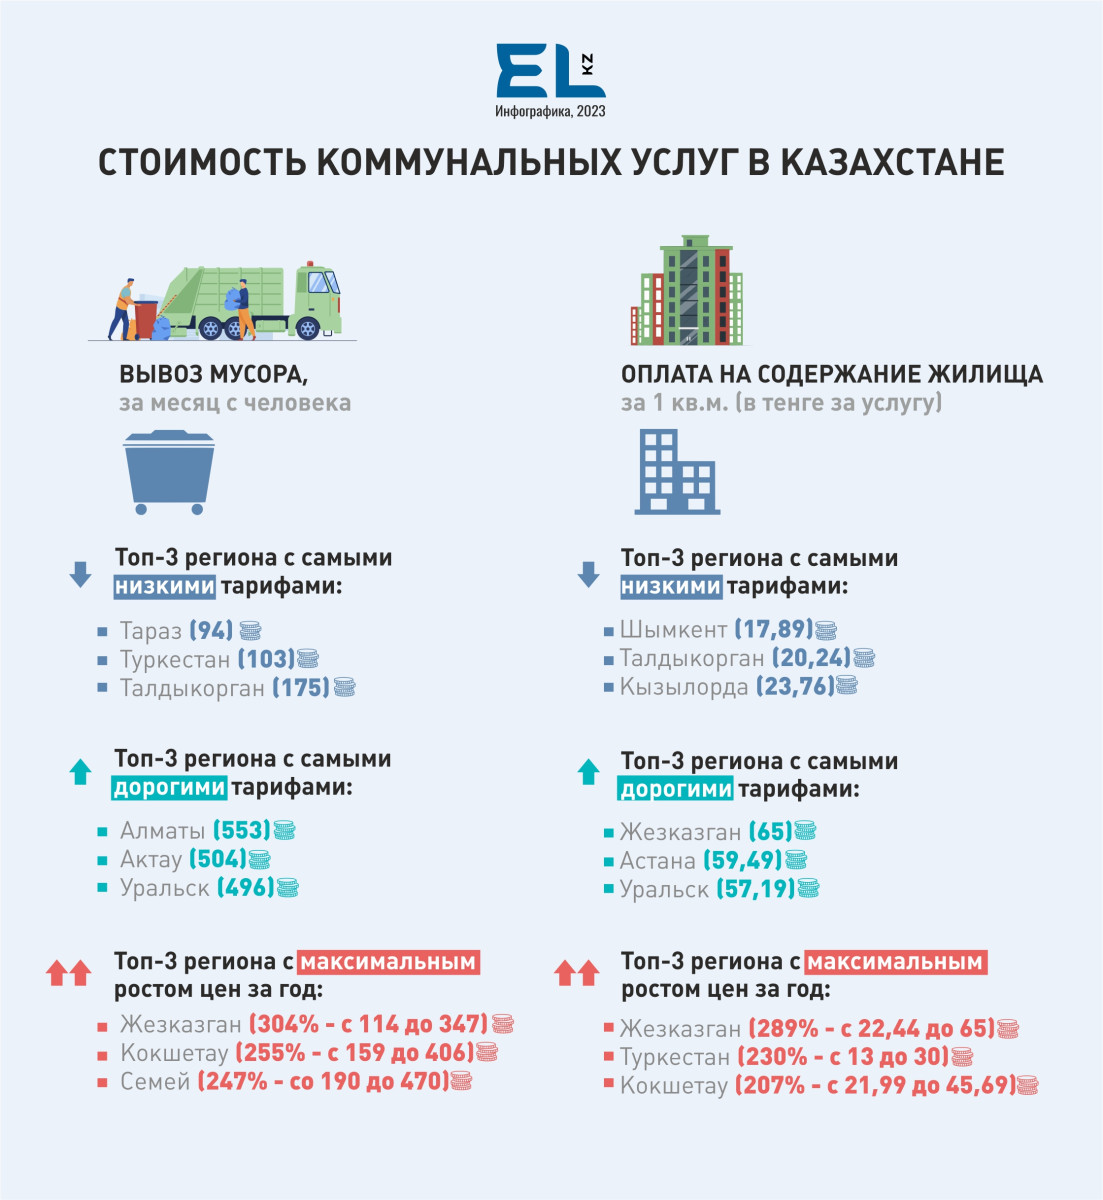 Где в Казахстане больше всего выросли цены на коммунальные услуги